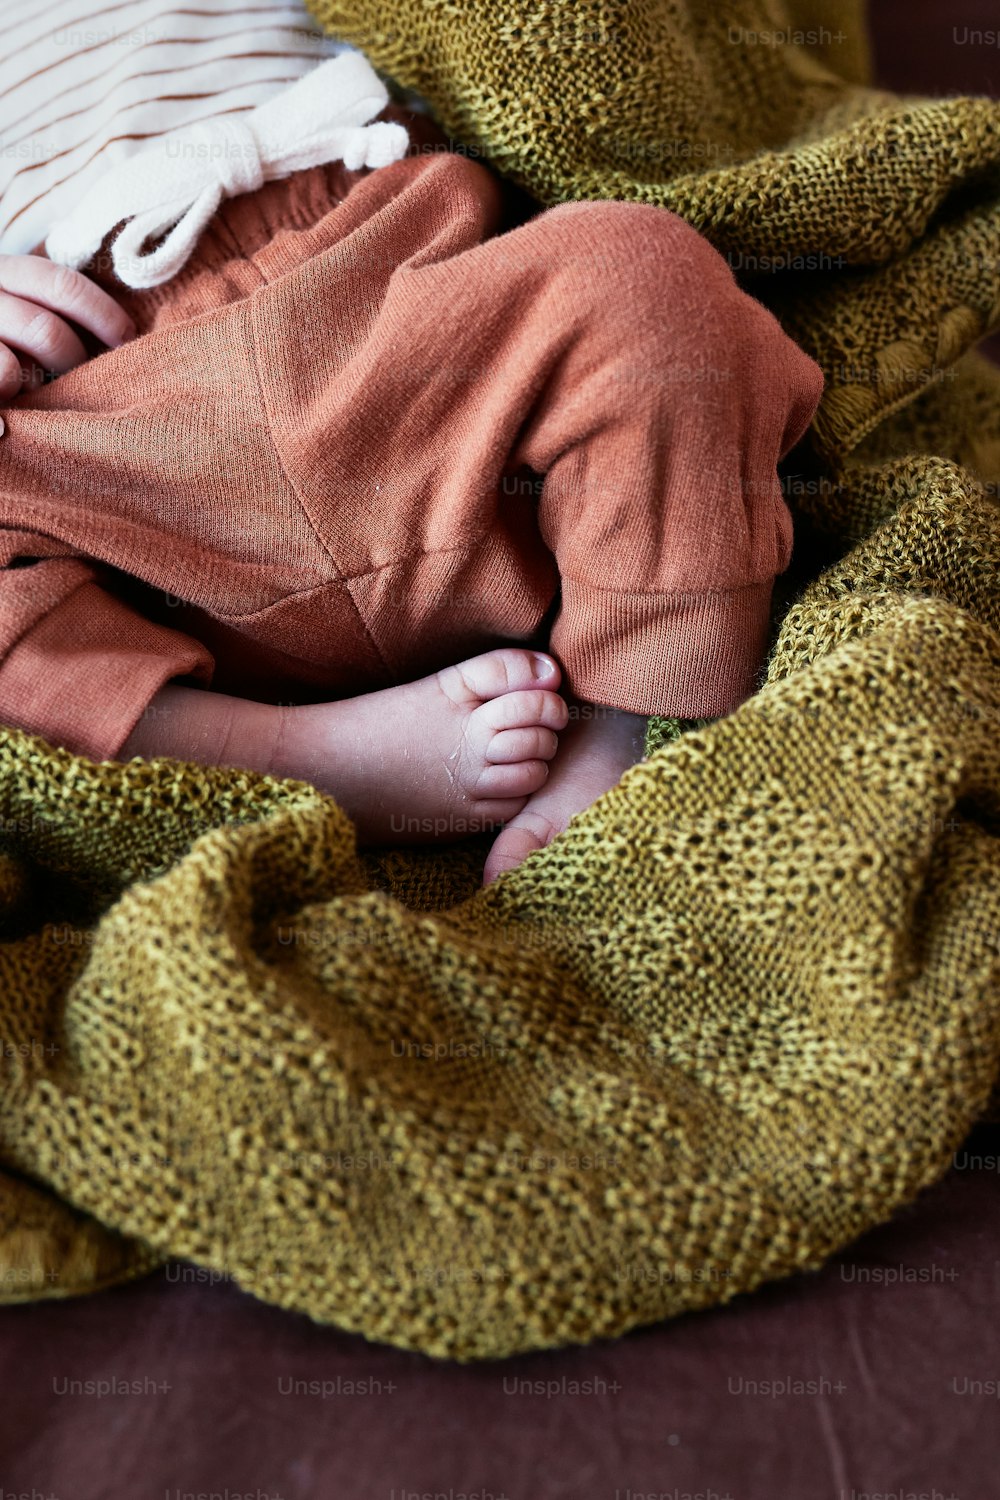 Un bebé envuelto en una manta en un sofá